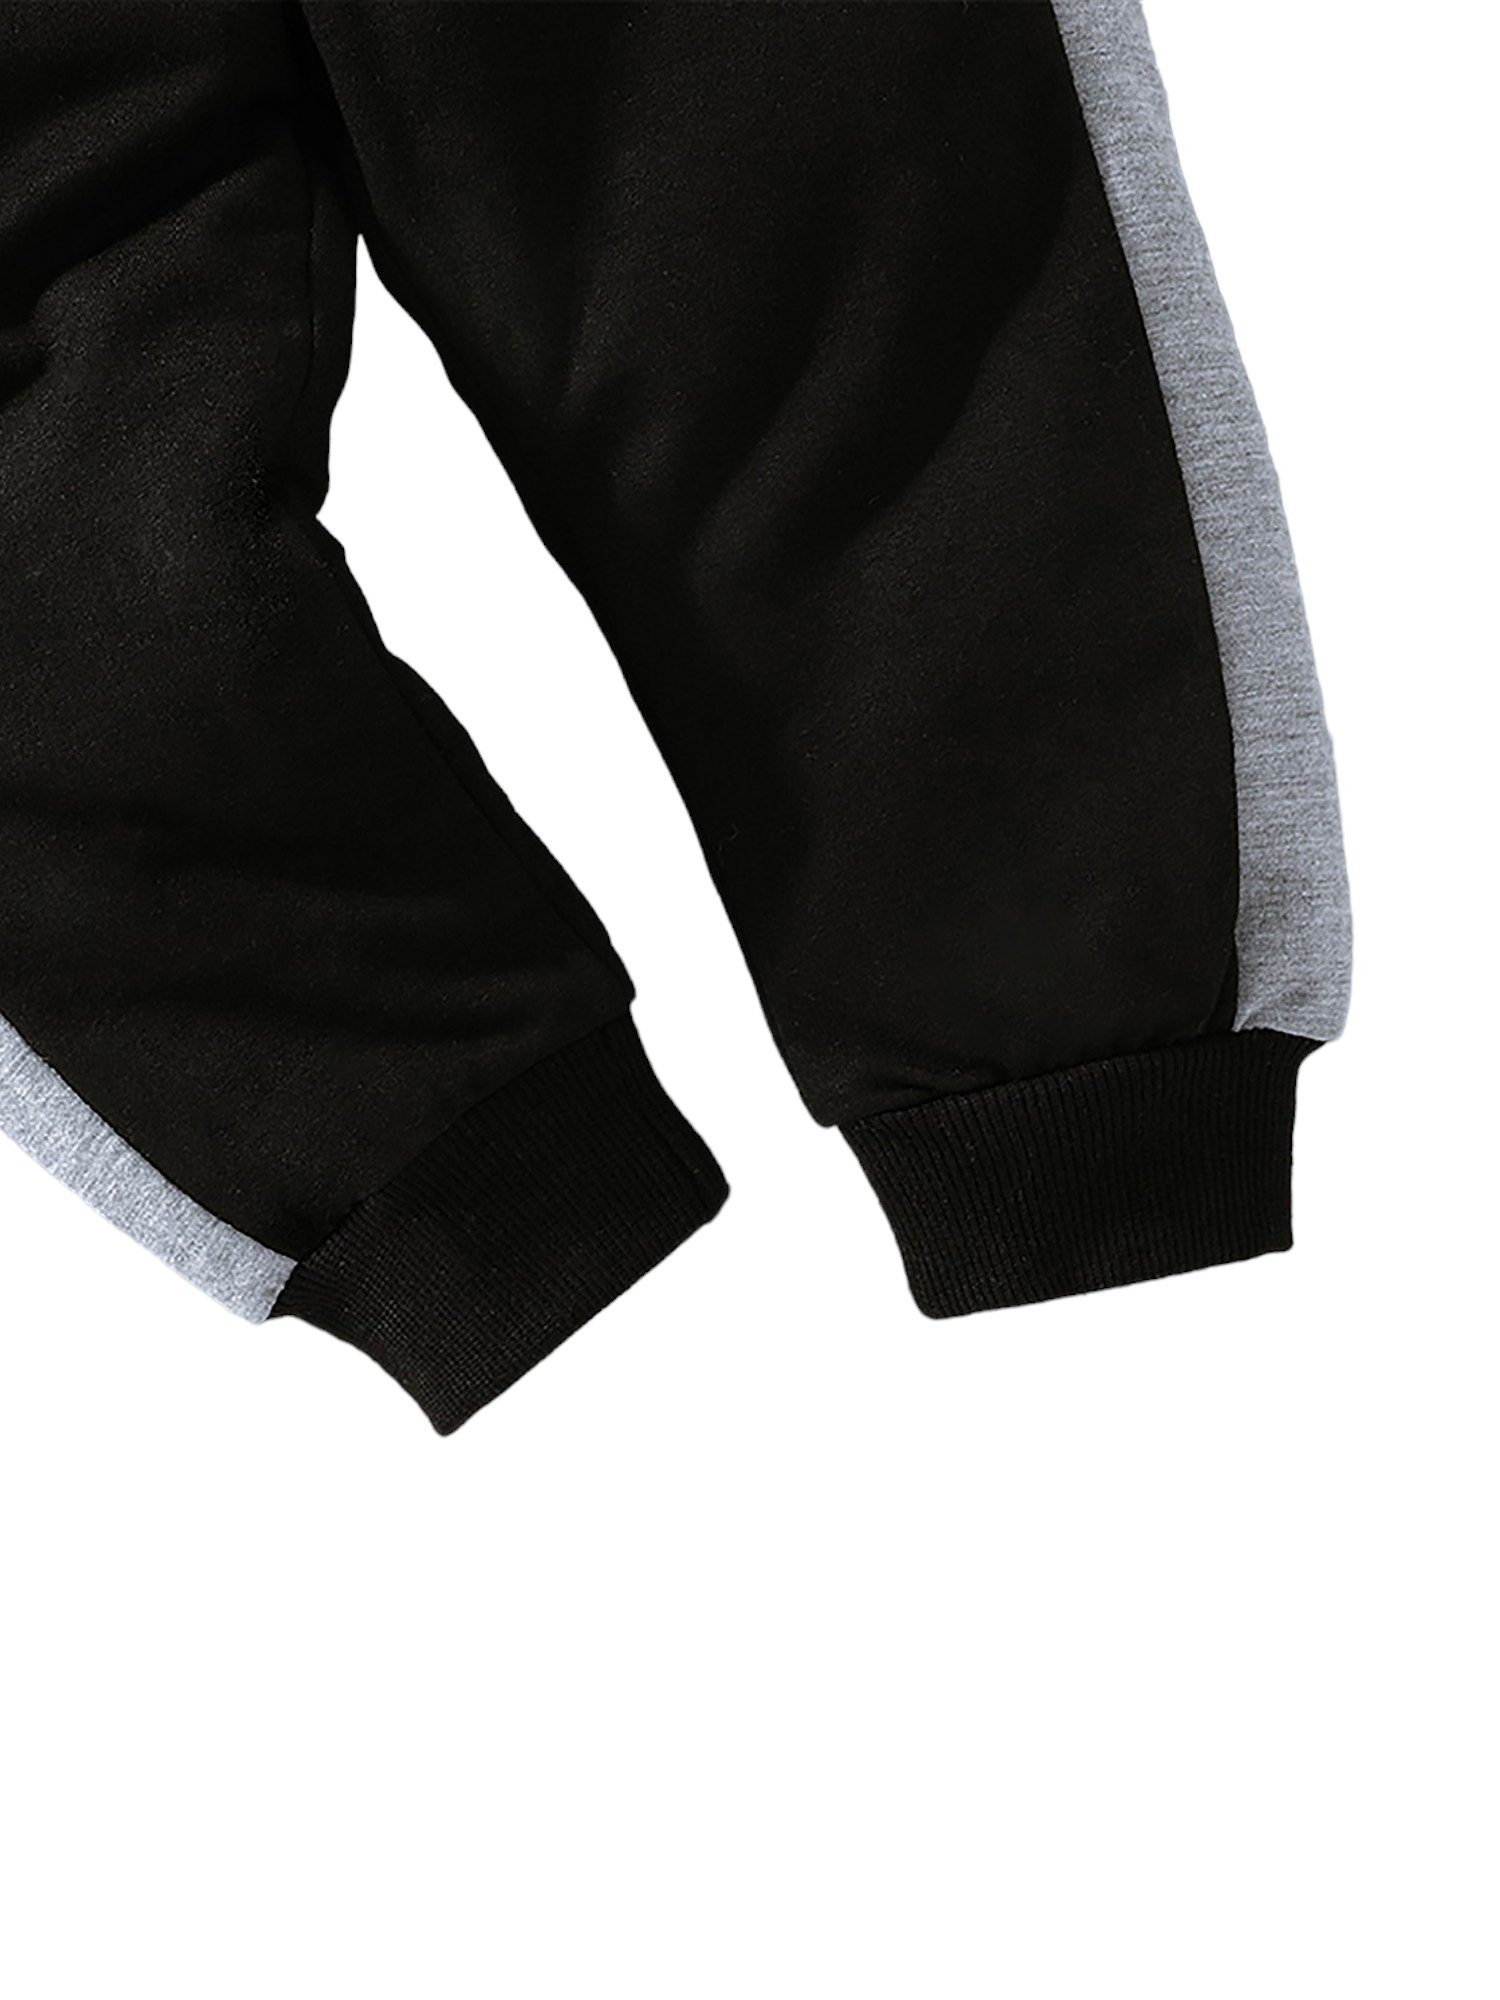 Hose Oberteile (2-tlg) für & Langarmanzüge, Top Jungen, Lapastyle Kontrastfarben lässige modisch Grau Trainingsanzüge Hosen und